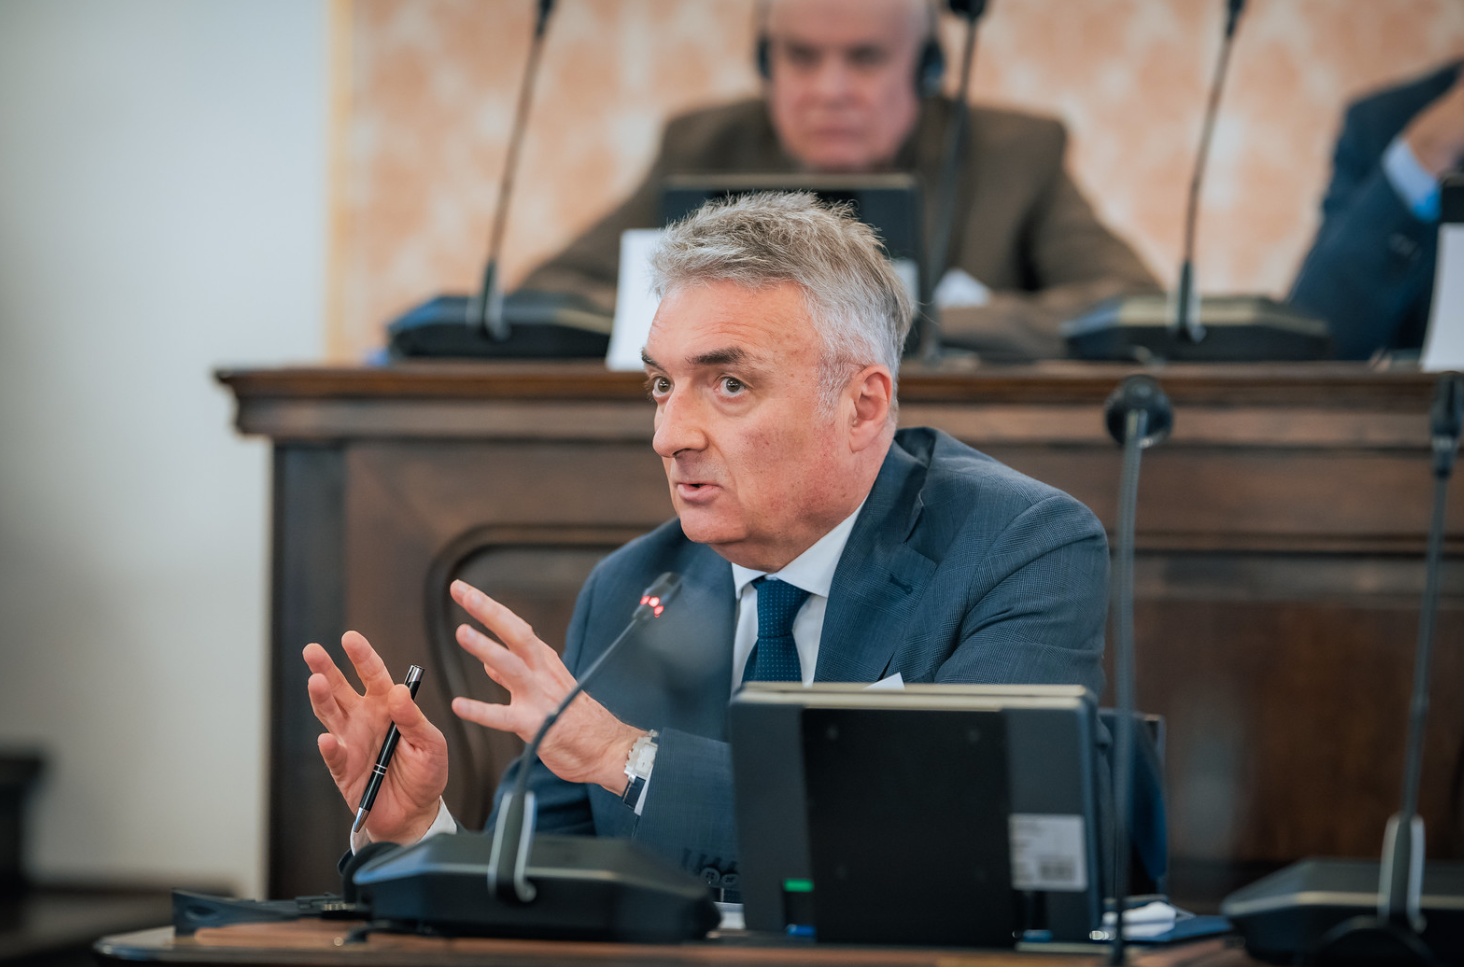 EU i Zapadni Balkan, Moldavija, Ukrajina: “Istorijski imperativ” ili želja? — Miodrag Vlahović